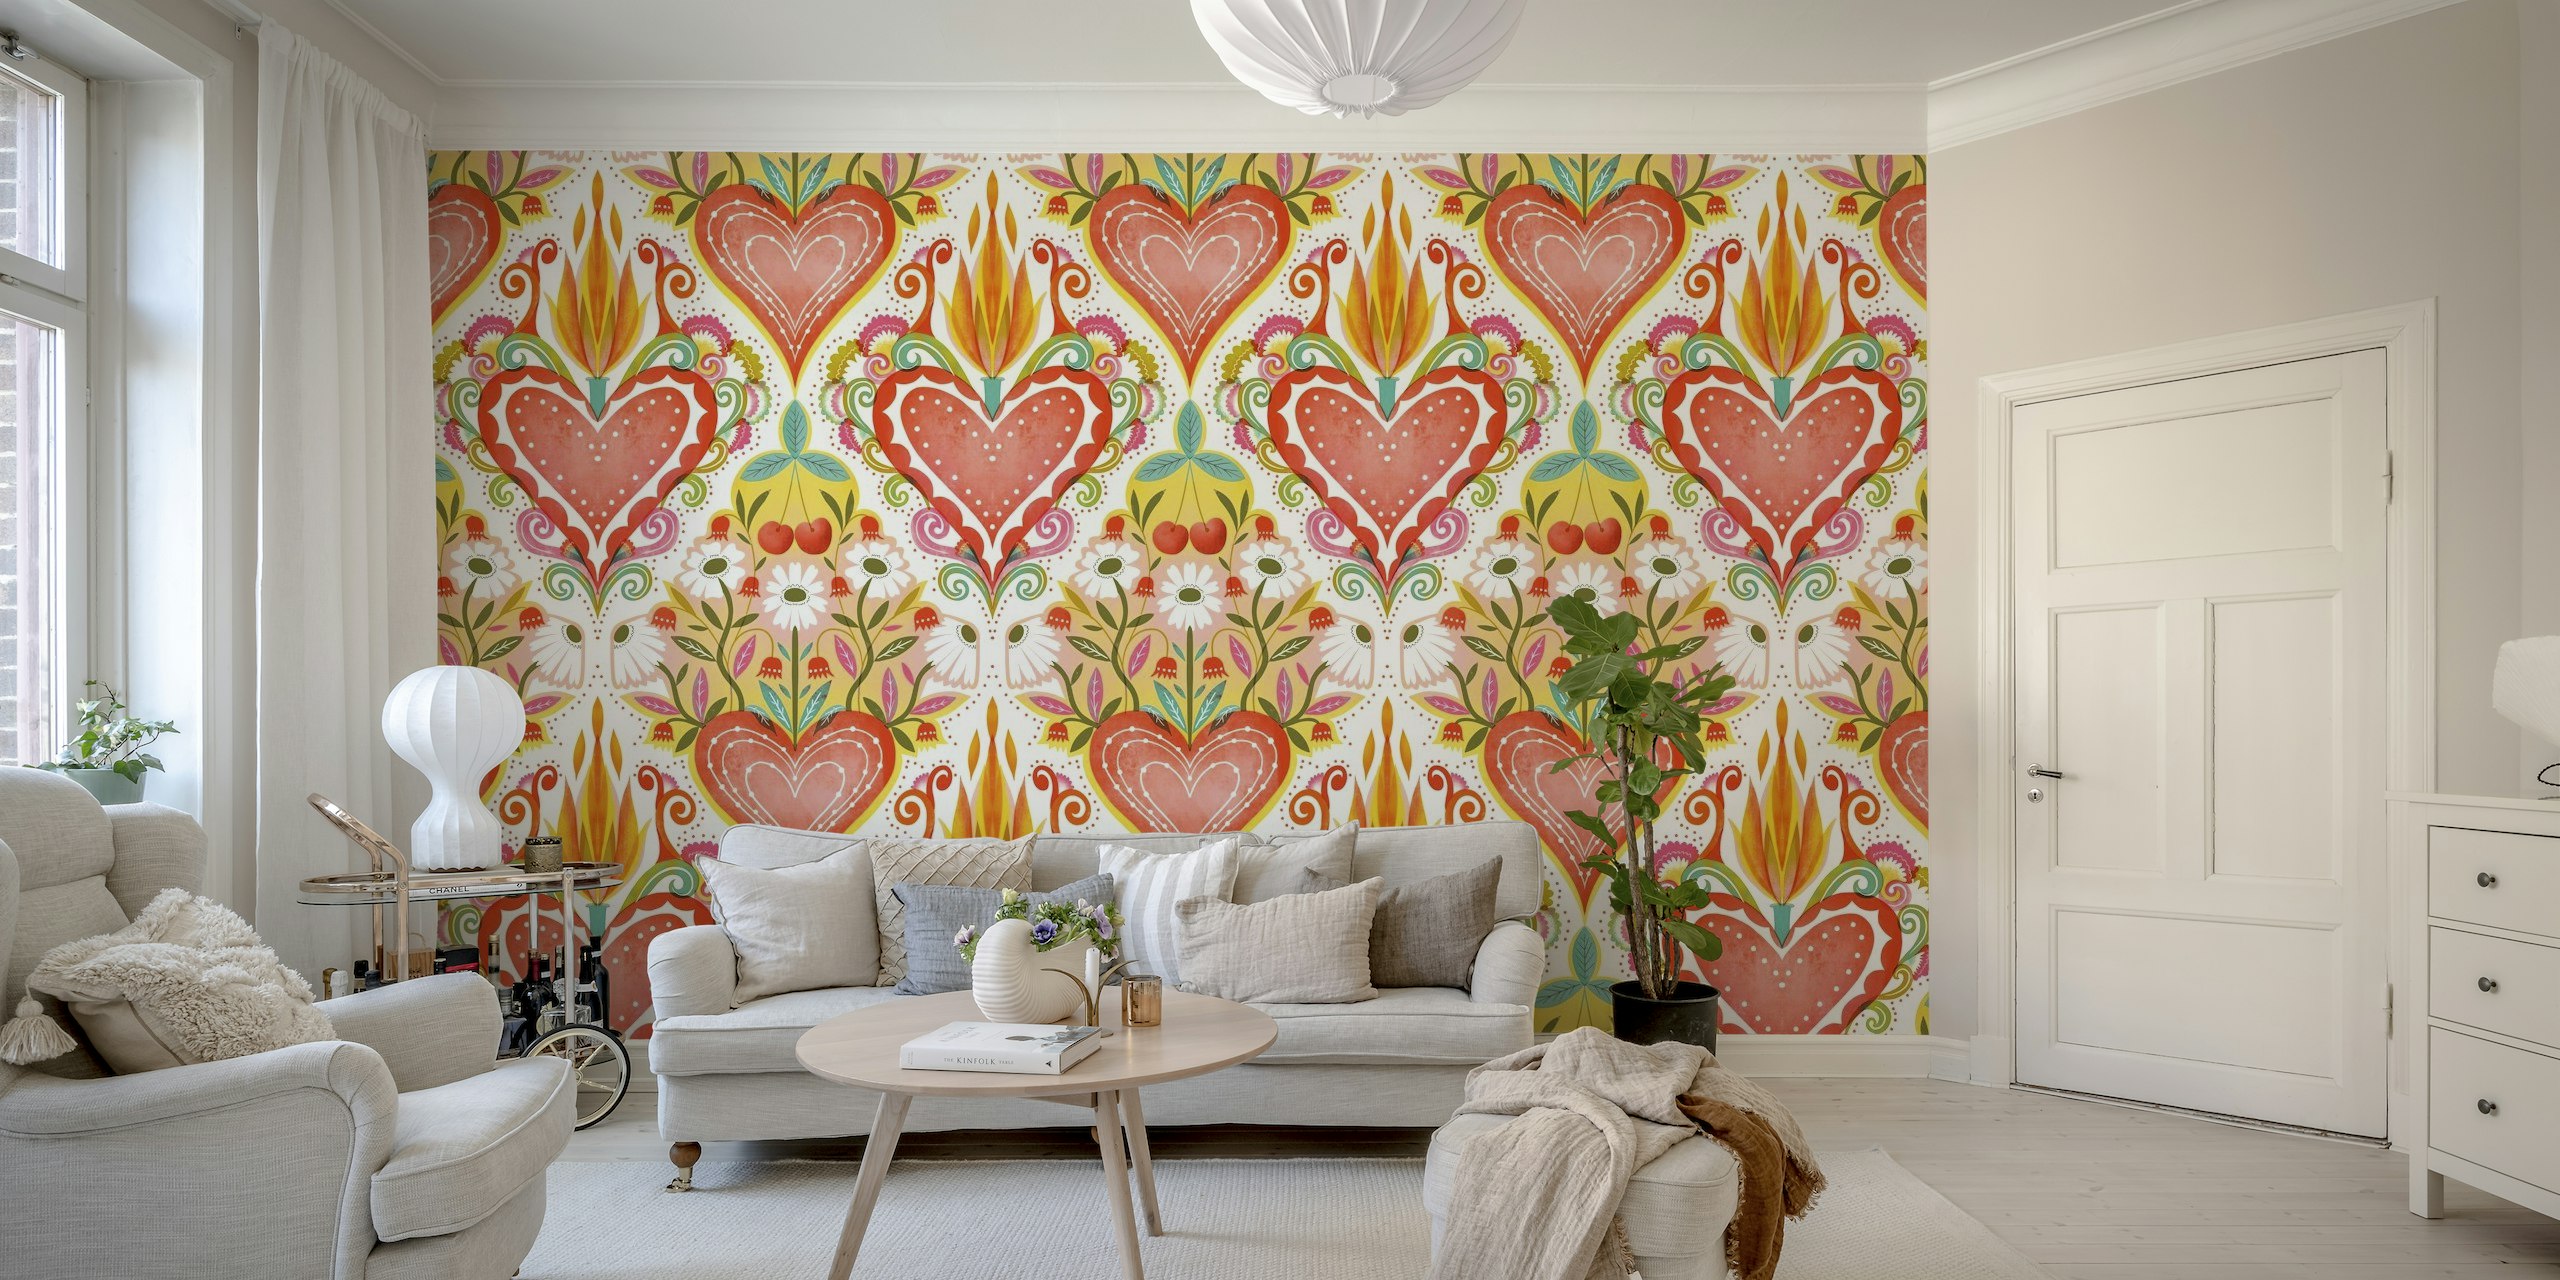 Murale colorée d'inspiration folklorique présentant un grand cœur central avec des flammes et des cœurs plus petits et des motifs floraux environnants.